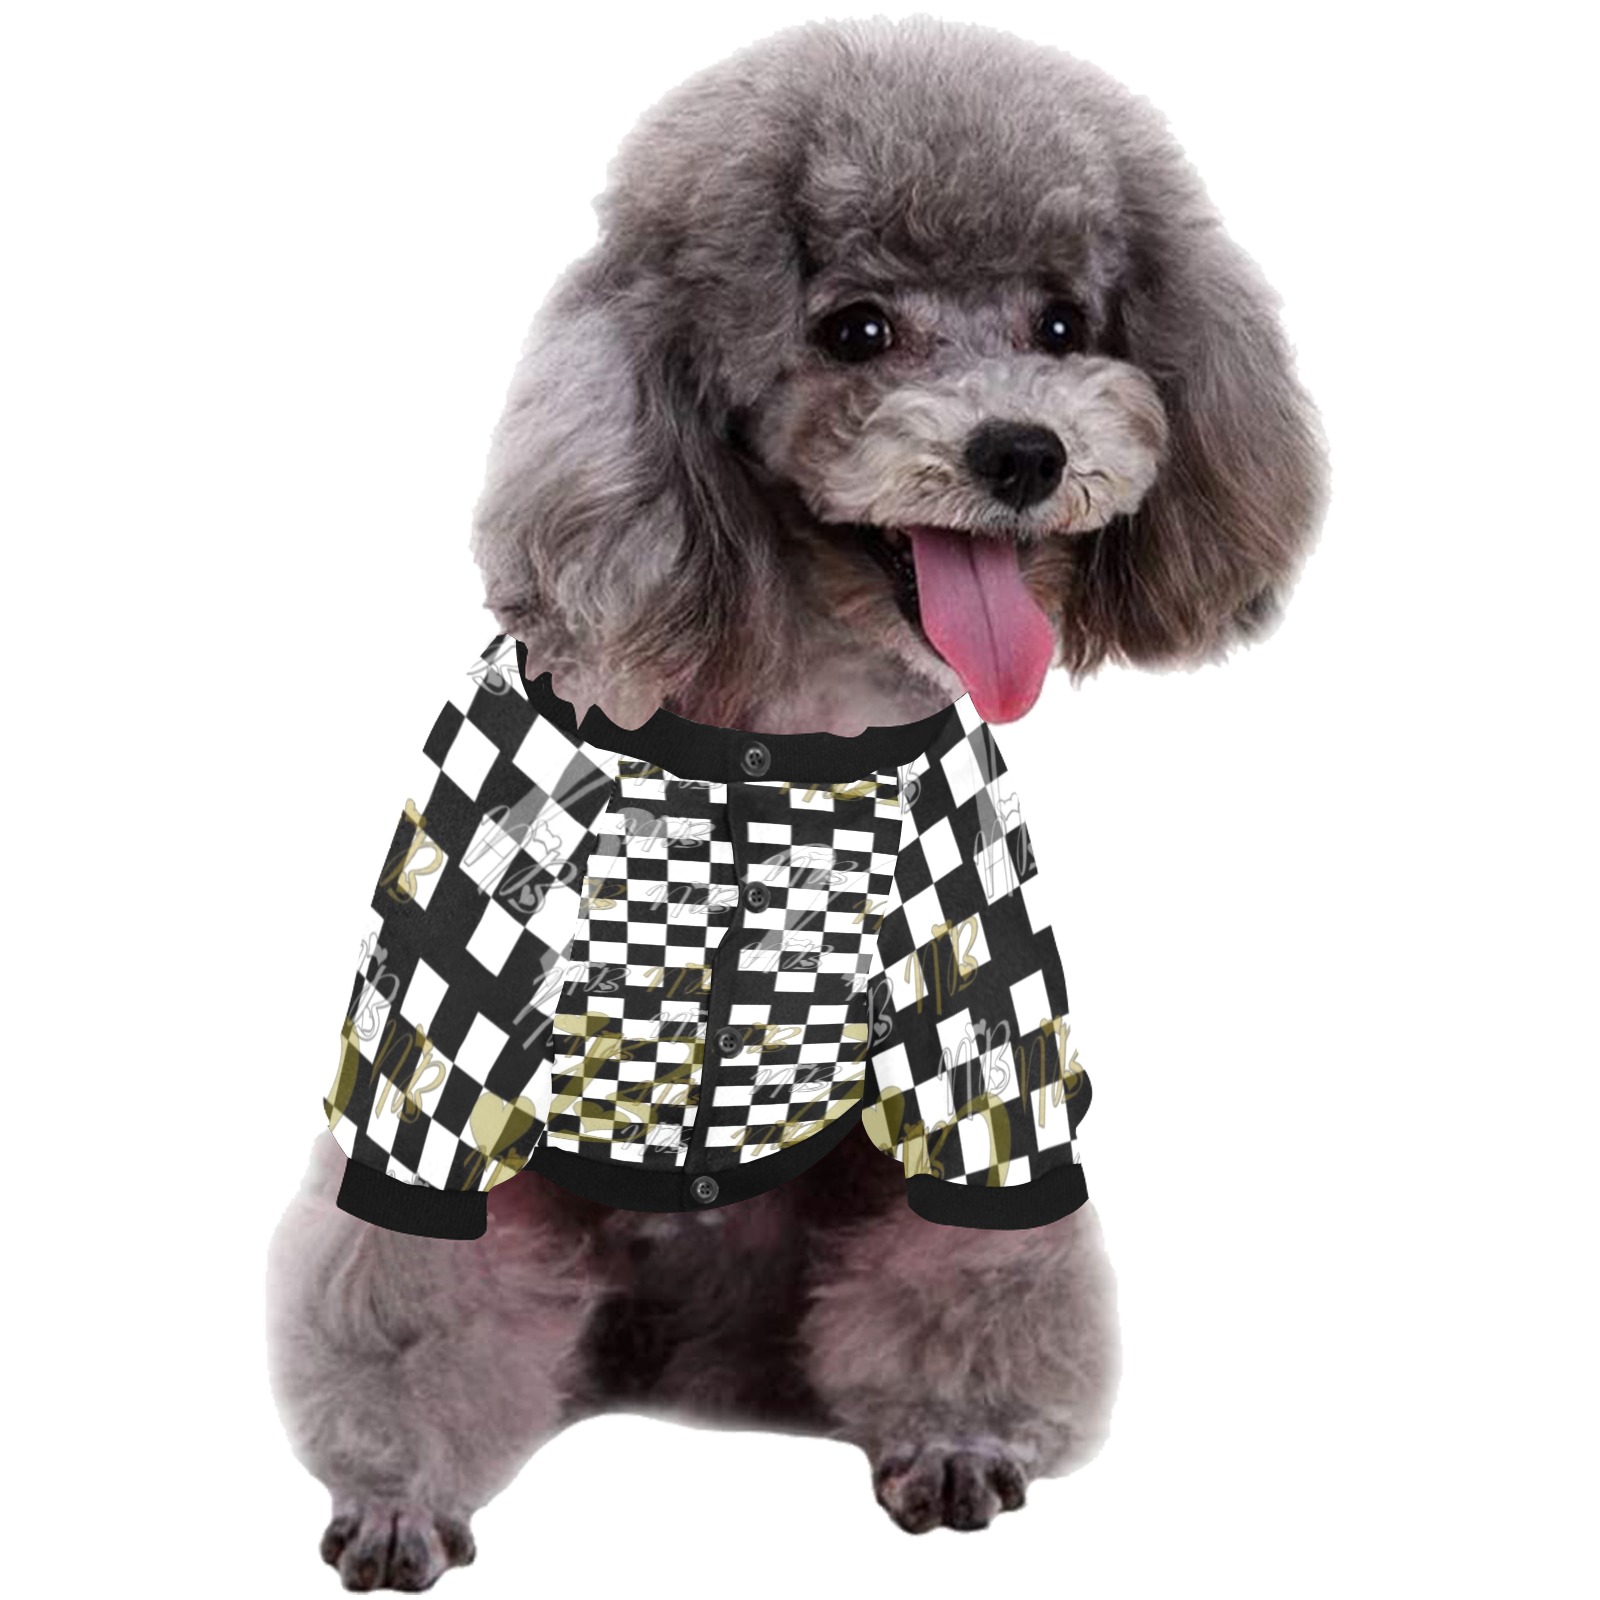 Nico Pop Art by Nico Bielow Pet Dog Round Neck Shirt